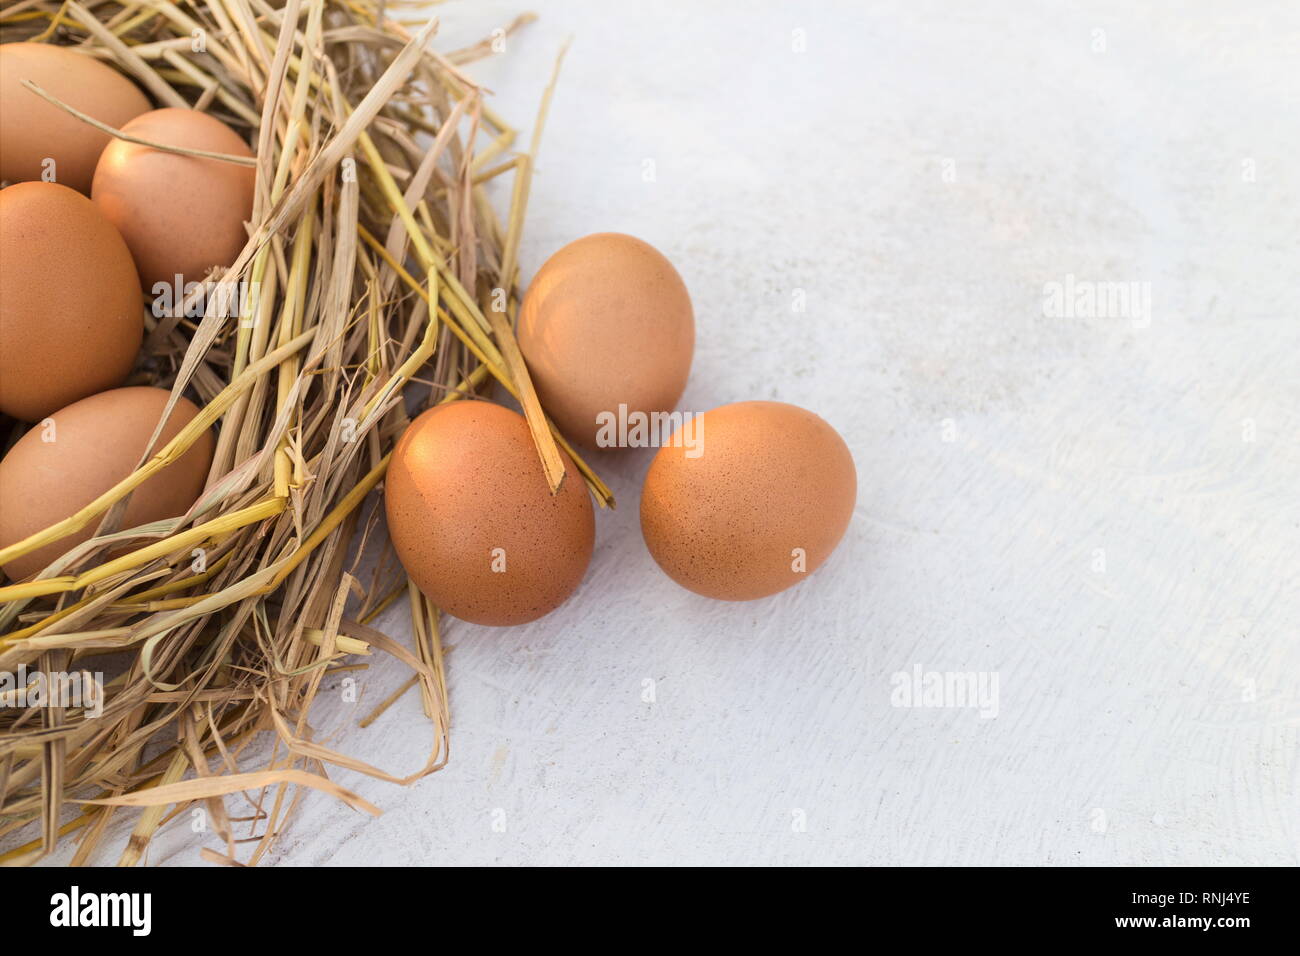 Pollo fresco huevo en un nido y huevos marrón sobre una tabla de madera blanca, imagen con espacio de copia. Foto de stock